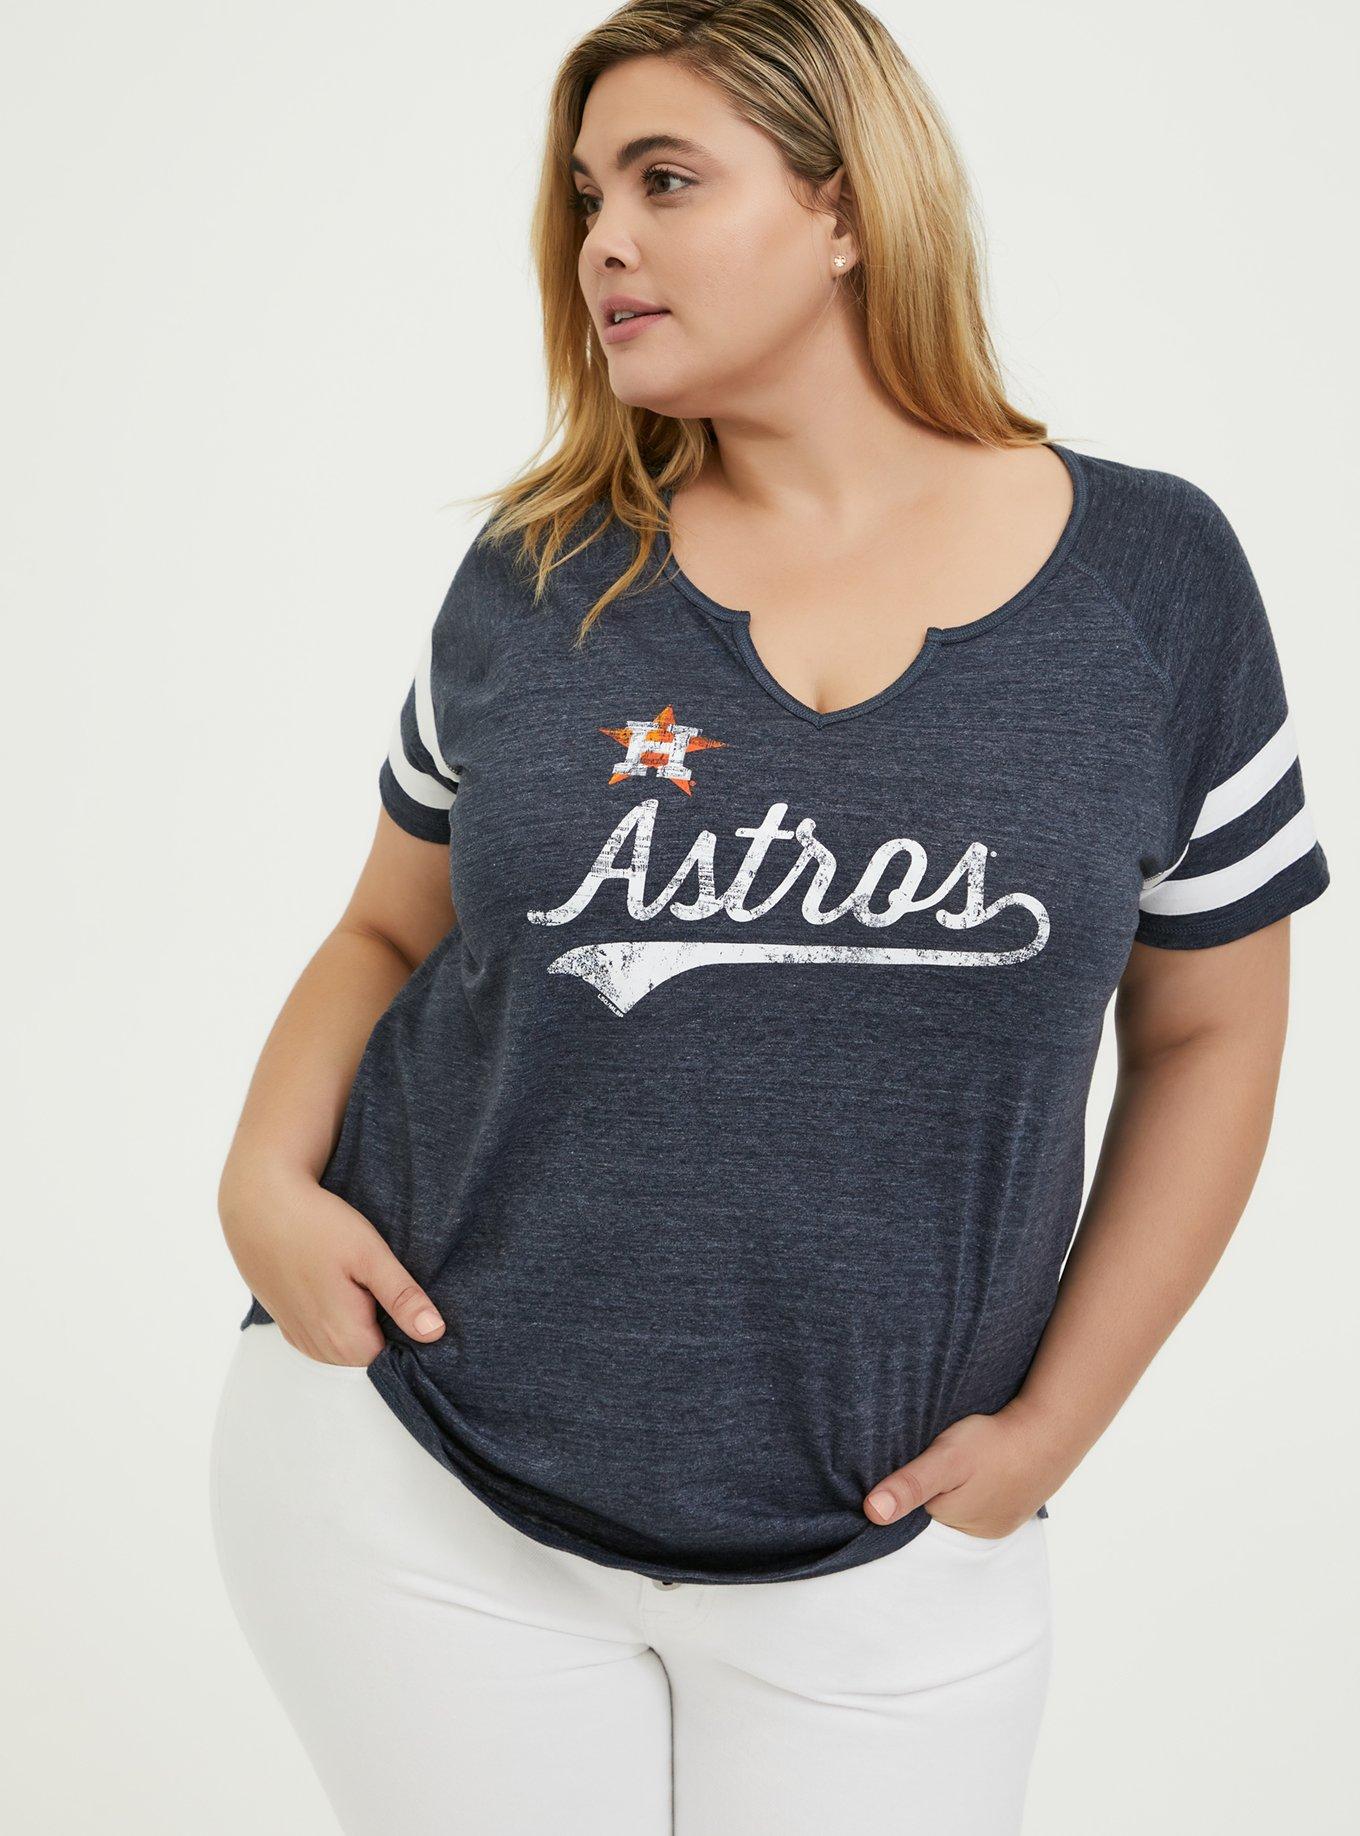 Houston Astros Women's Plus Size Raglan T-Shirt - Navy